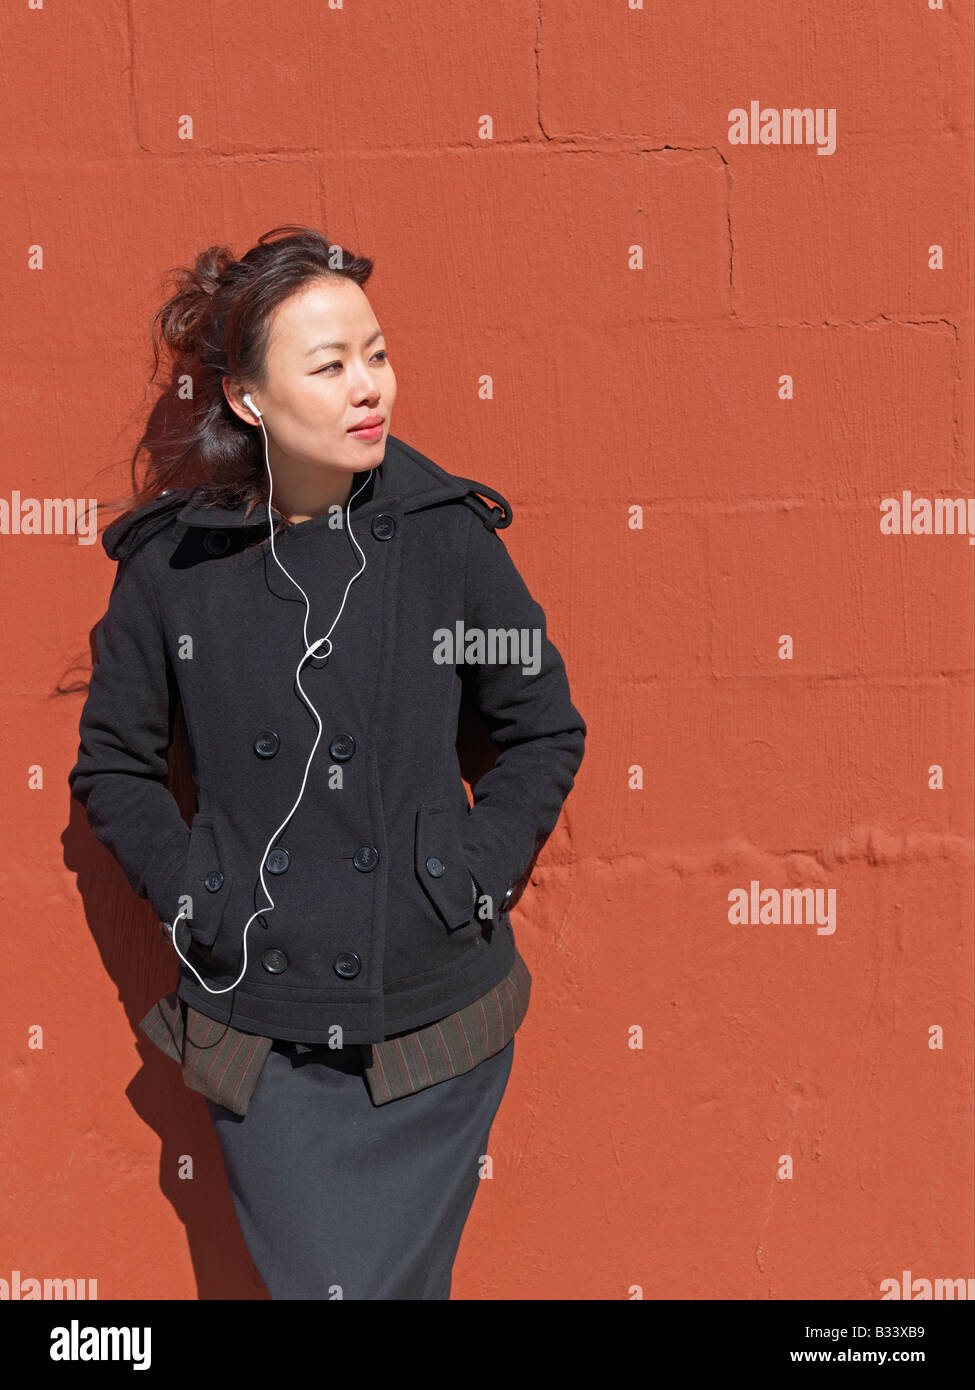 Eine junge Frau, Musik hören, eine bunte Wand gelehnt. Stockfoto